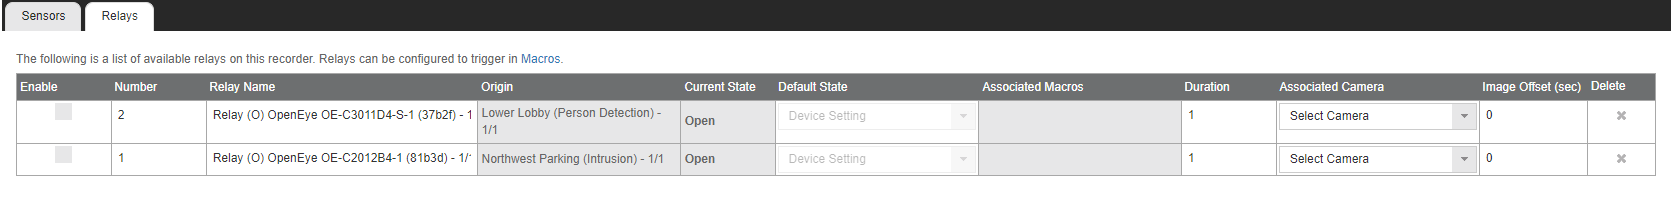 Server Setup Sensor Relay Relays.png